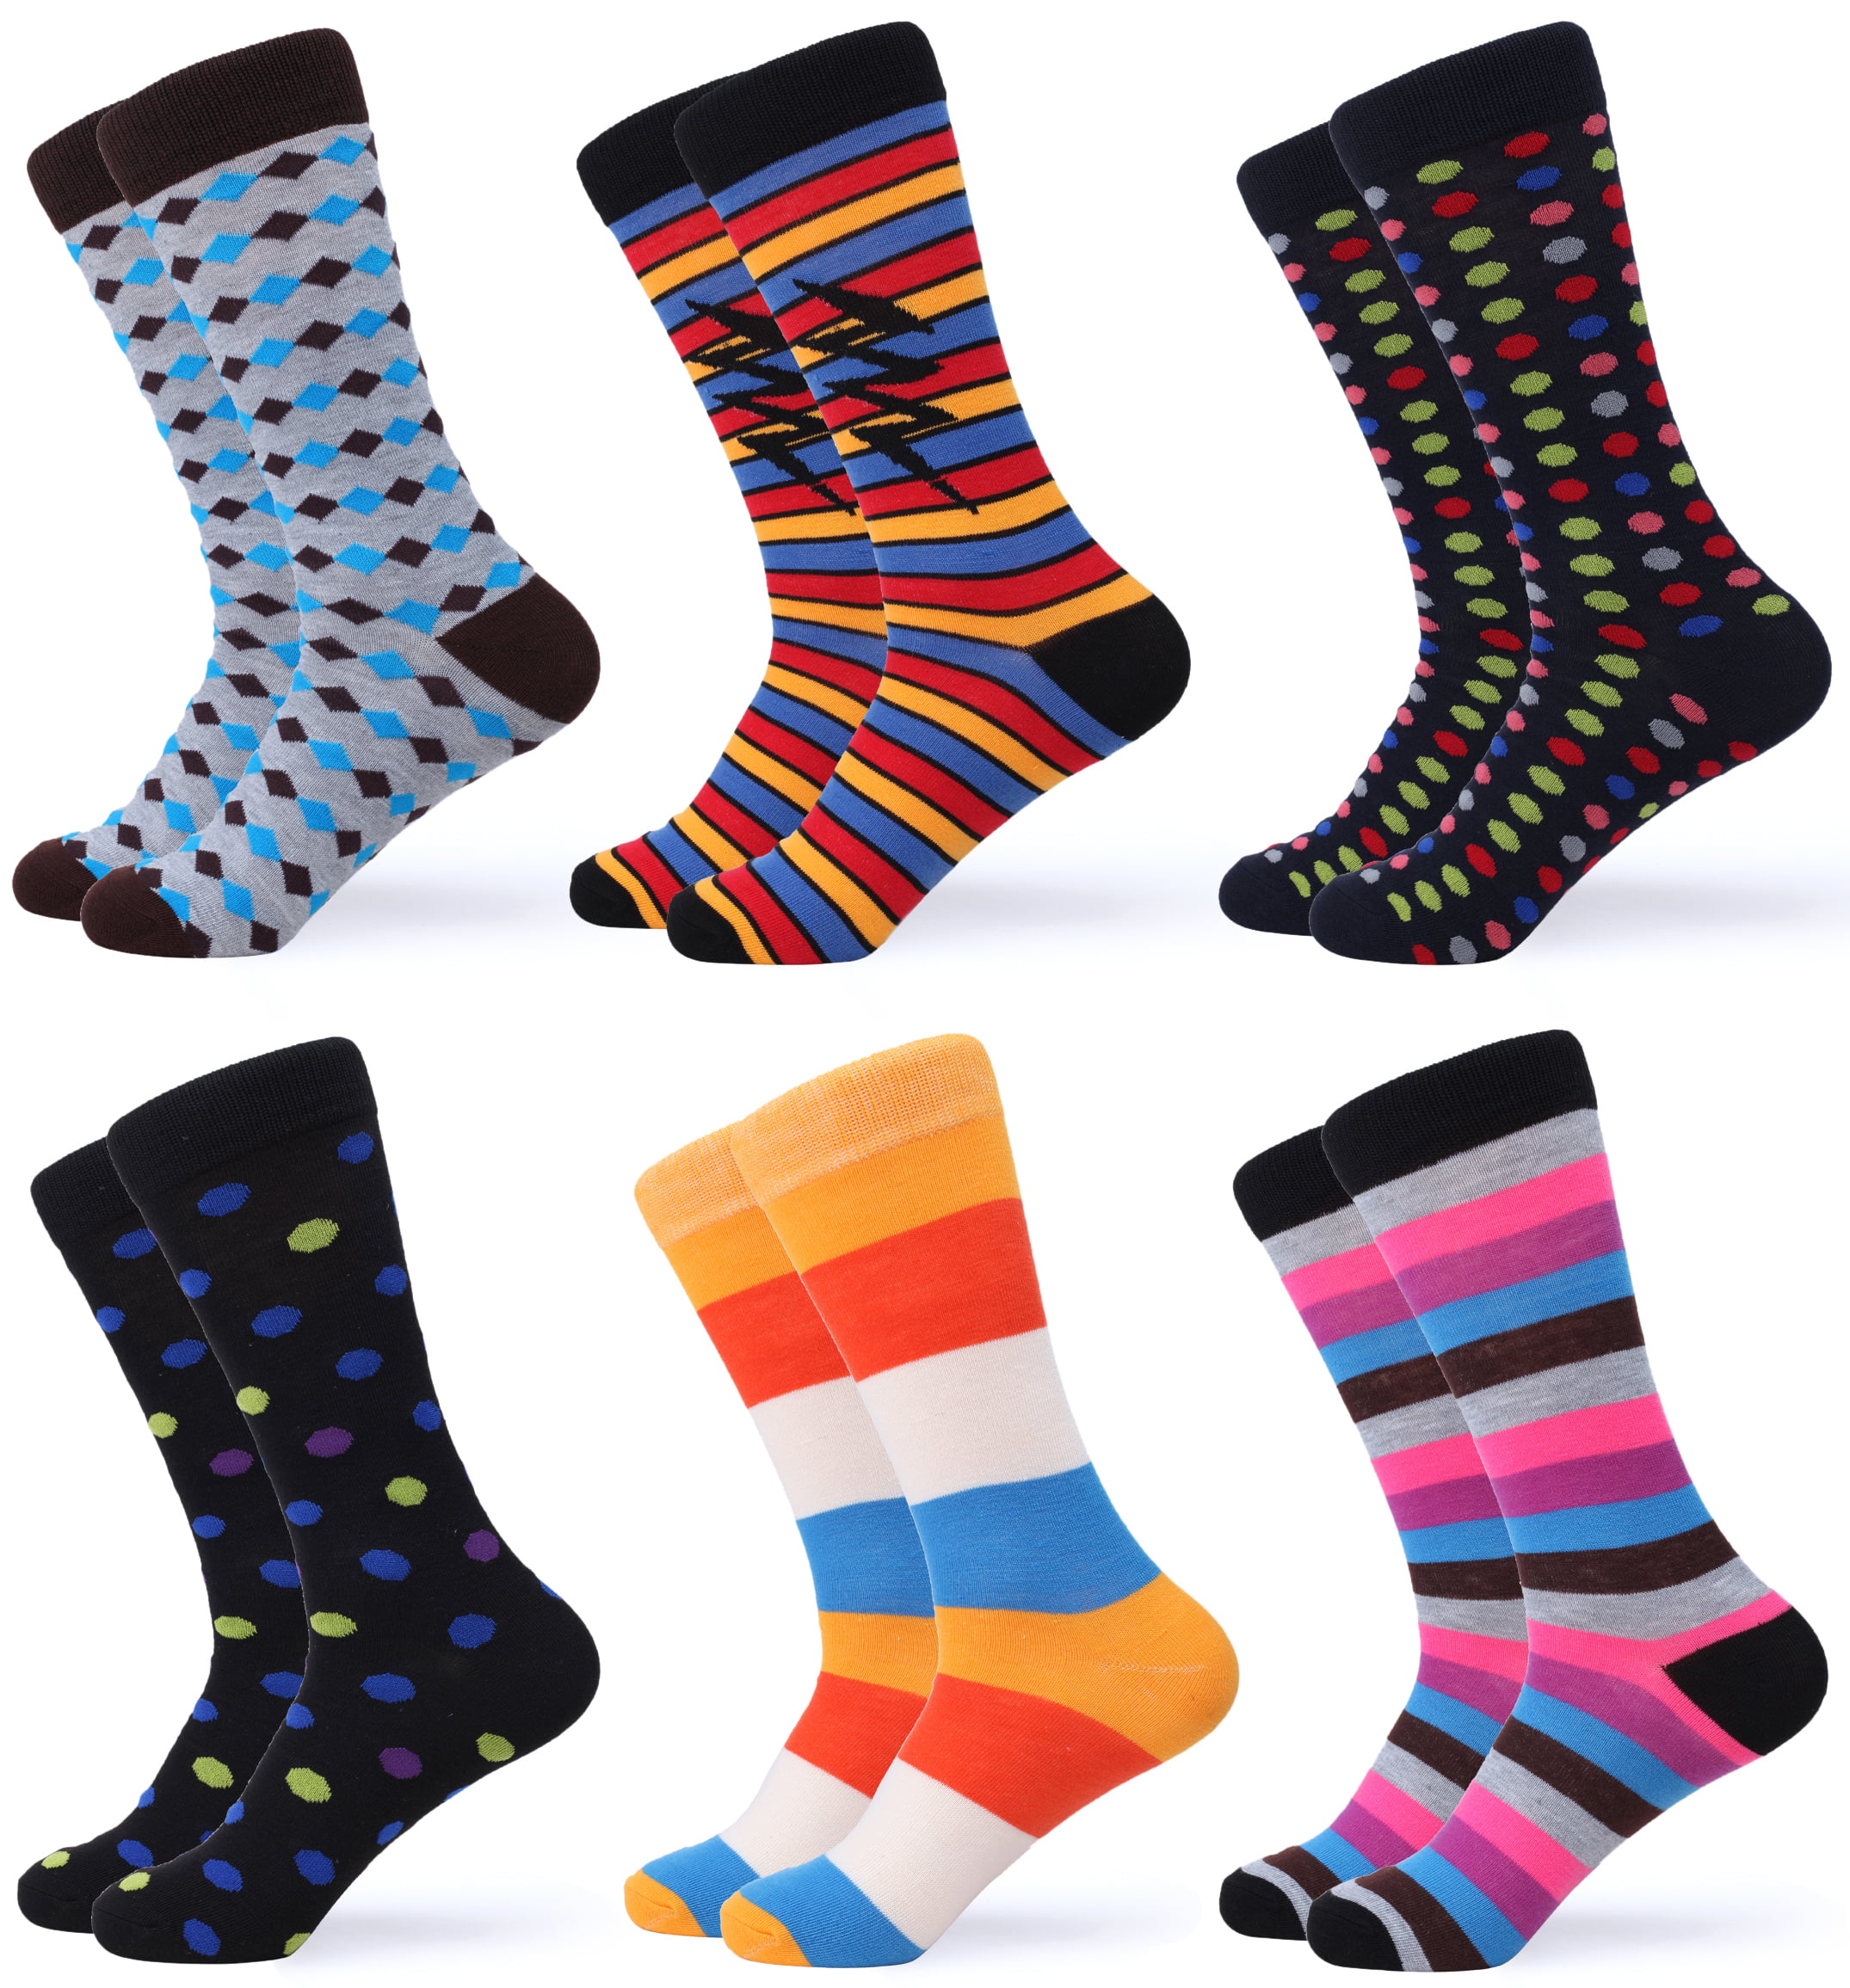 Gallery Seven Mens Dress Socks Funky Colorful Socks for Men - 6 Pack ...